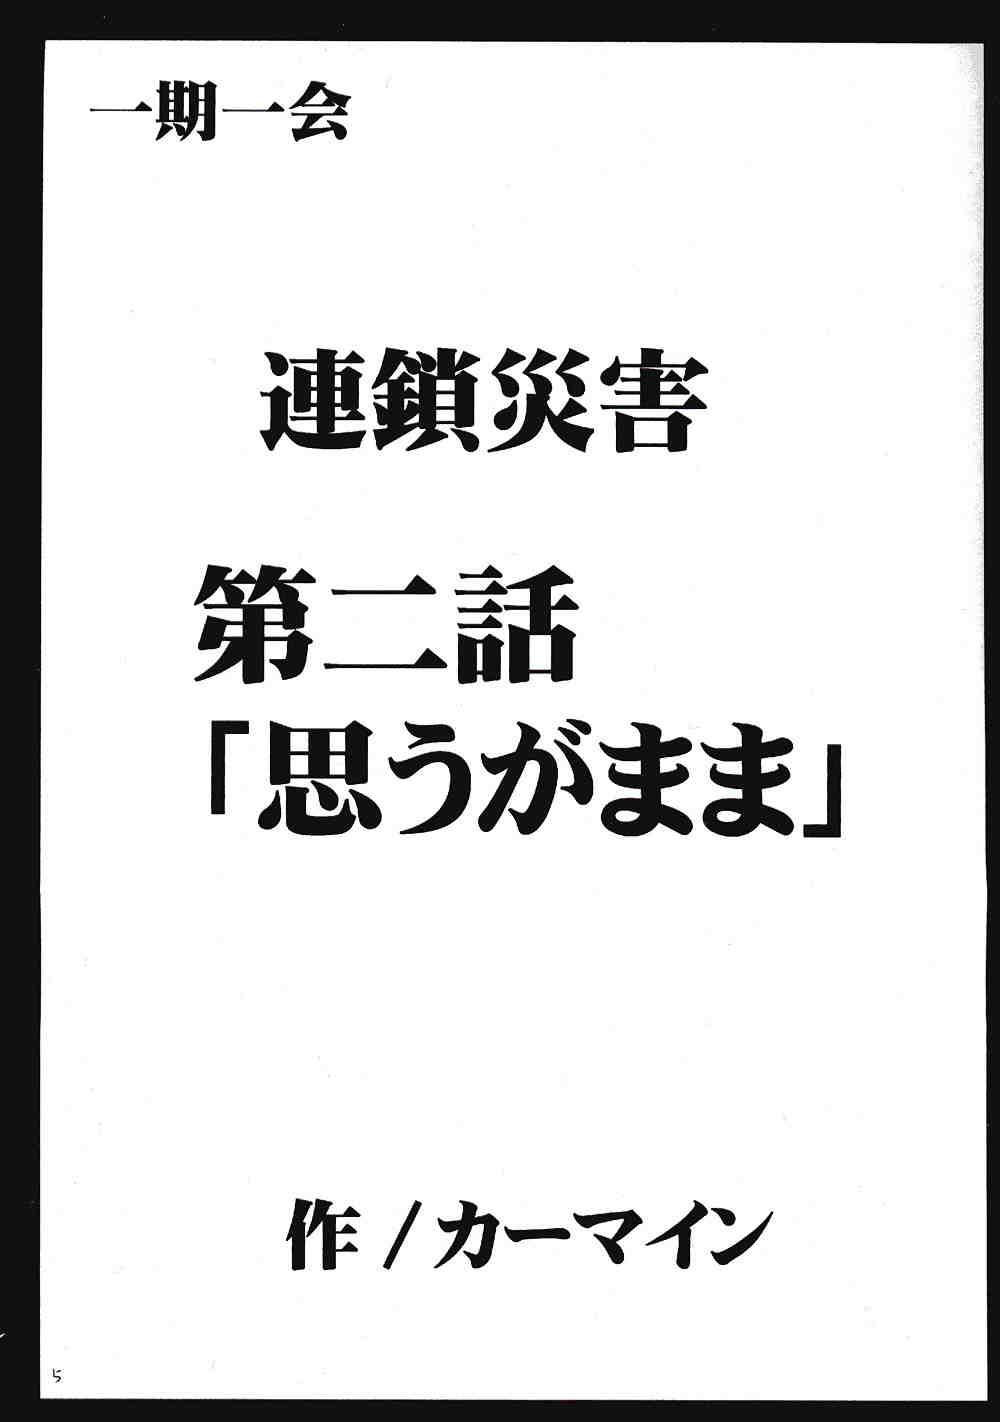 Gordita IchigoIchie 2 - Ichigo 100 Harcore - Page 4